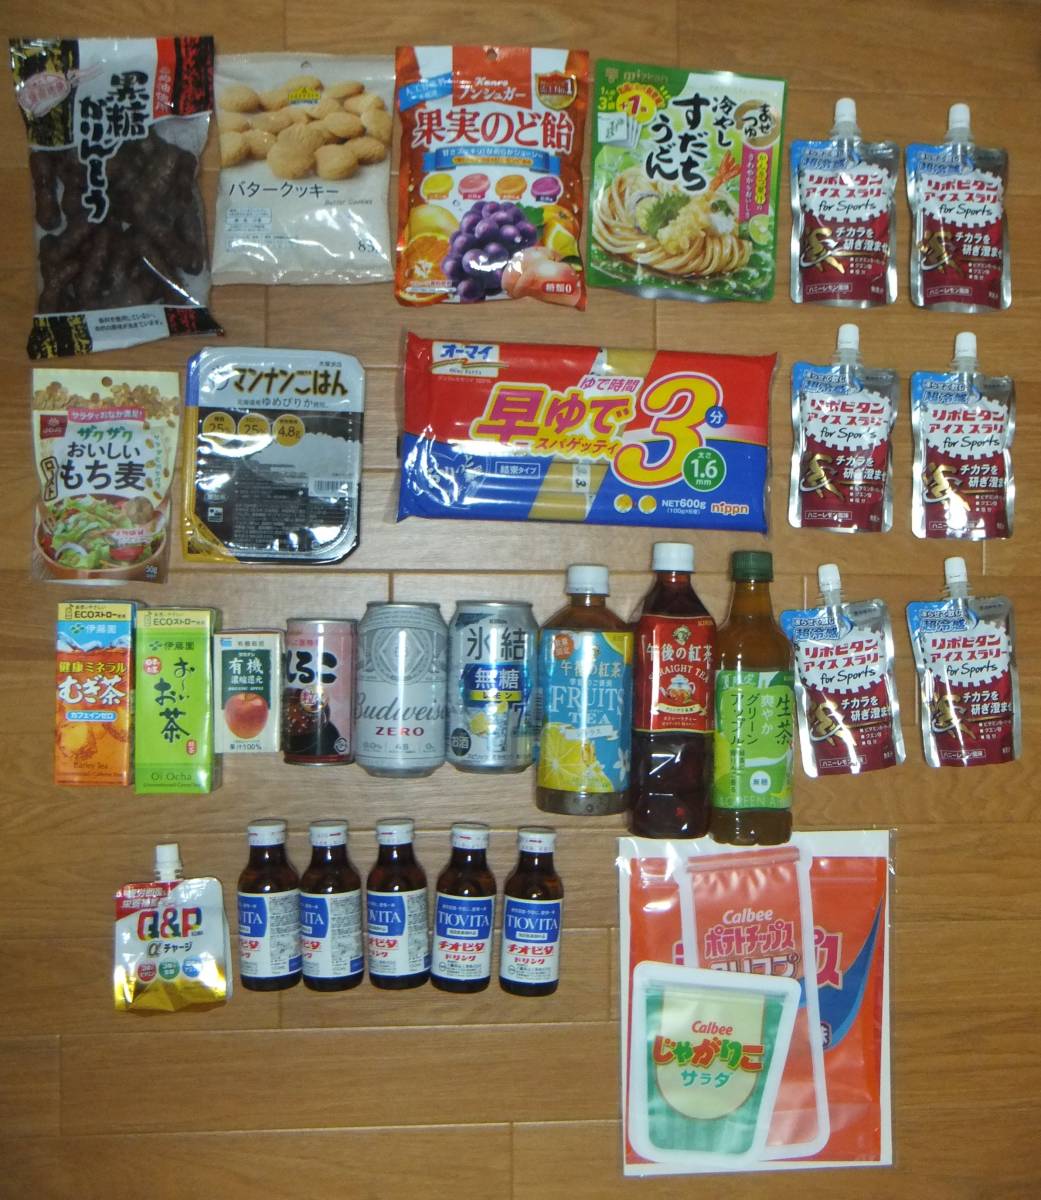 [ включая доставку ]4378 иен соответствует! коробка много. еда ...19 вид 28 пункт 